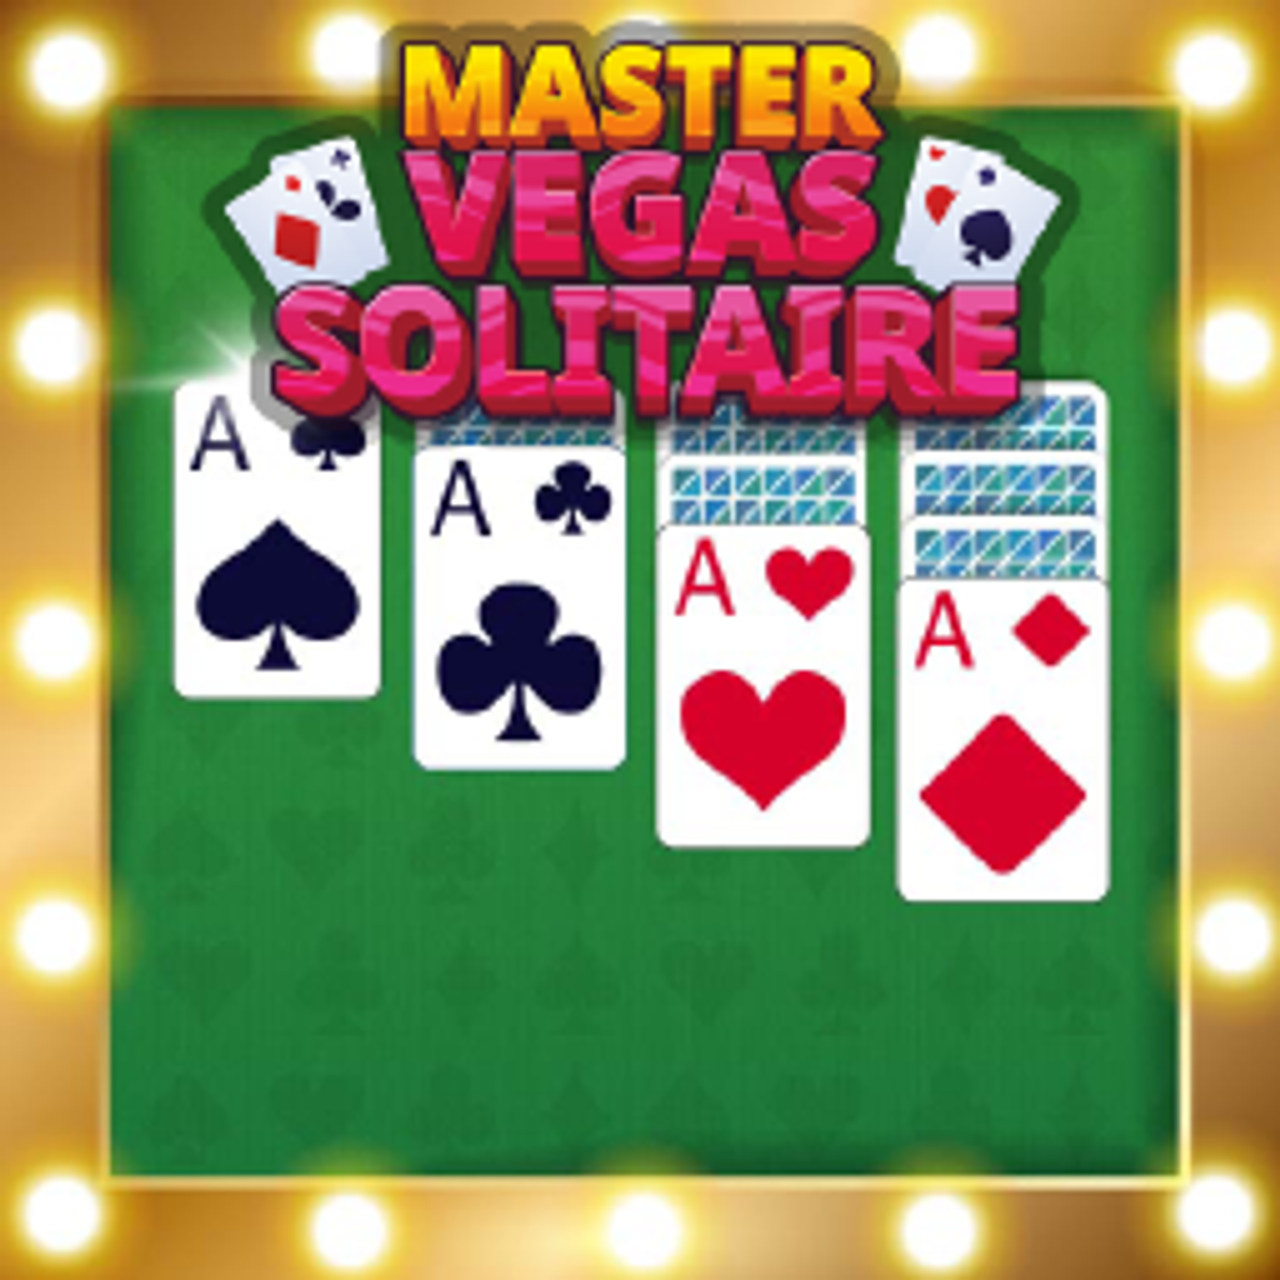 Master Vegas Solitaire